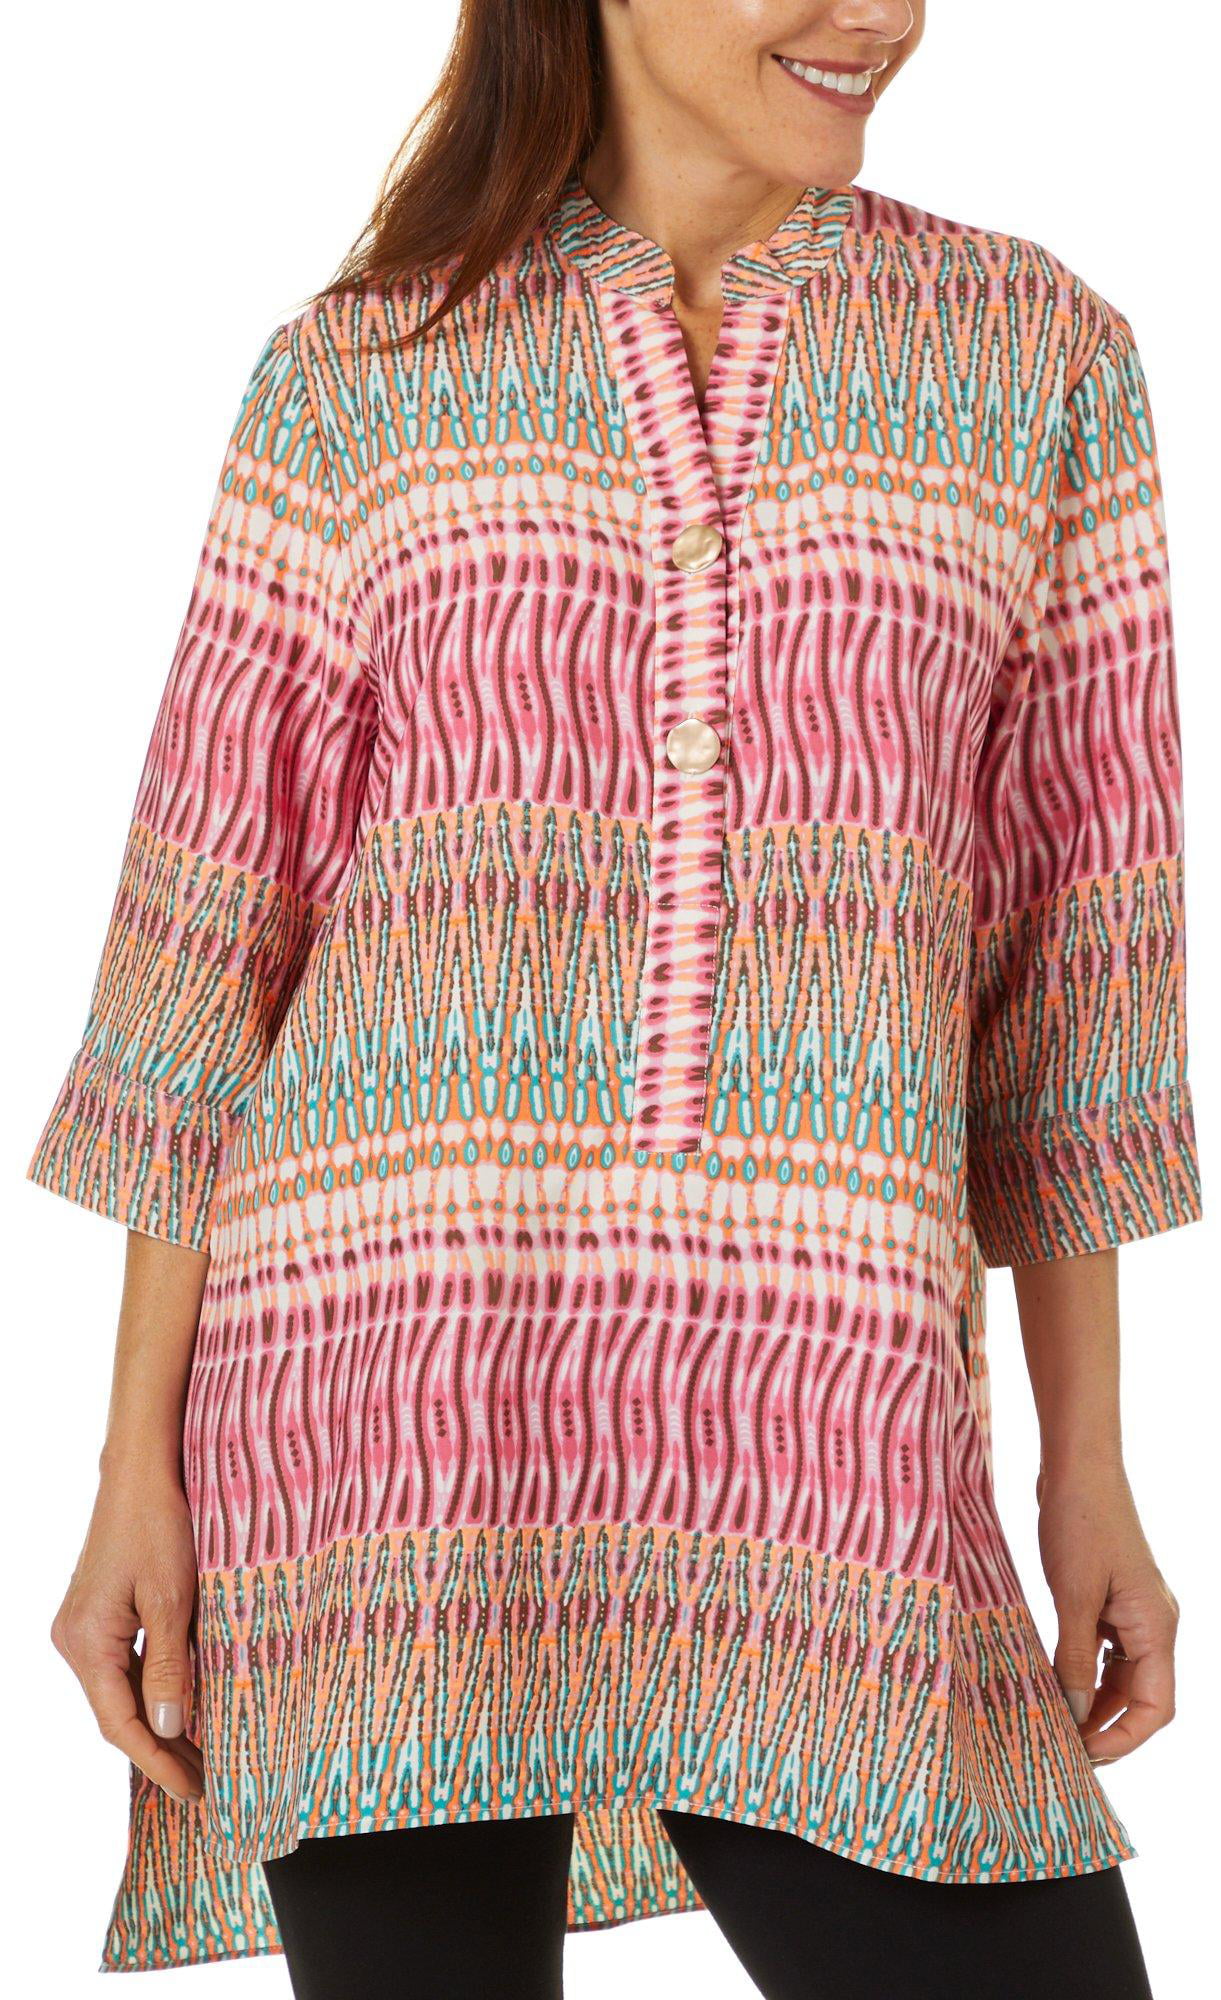 Coral Bay - Coral Bay Womens Batik Inspired Print Tunic Top - Walmart ...